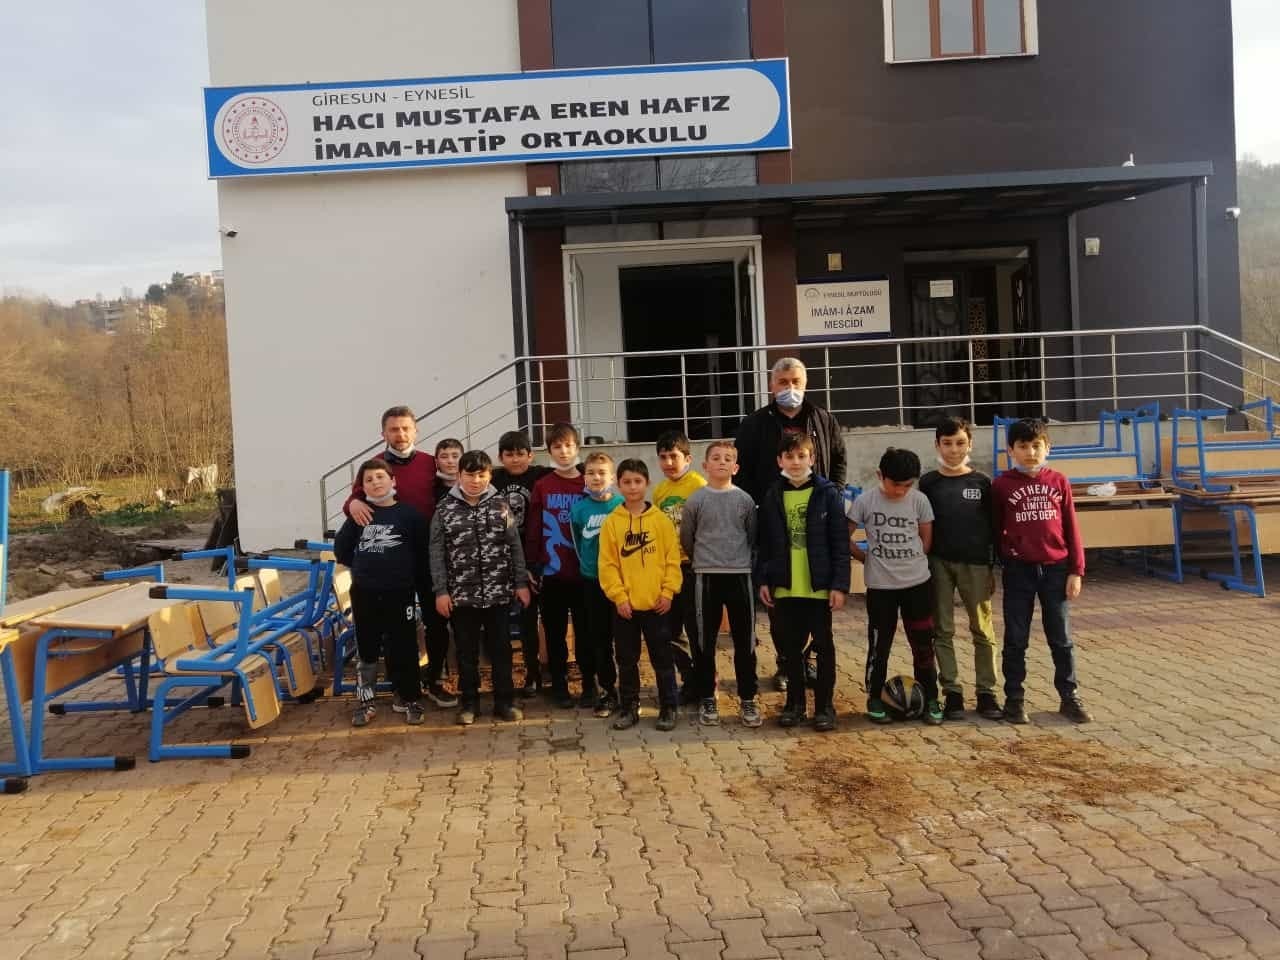 Karadeniz Bölgesi’nin tek hafızlık proje ortaokulu Giresun’un Eynesil ilçesinde bulunuyor